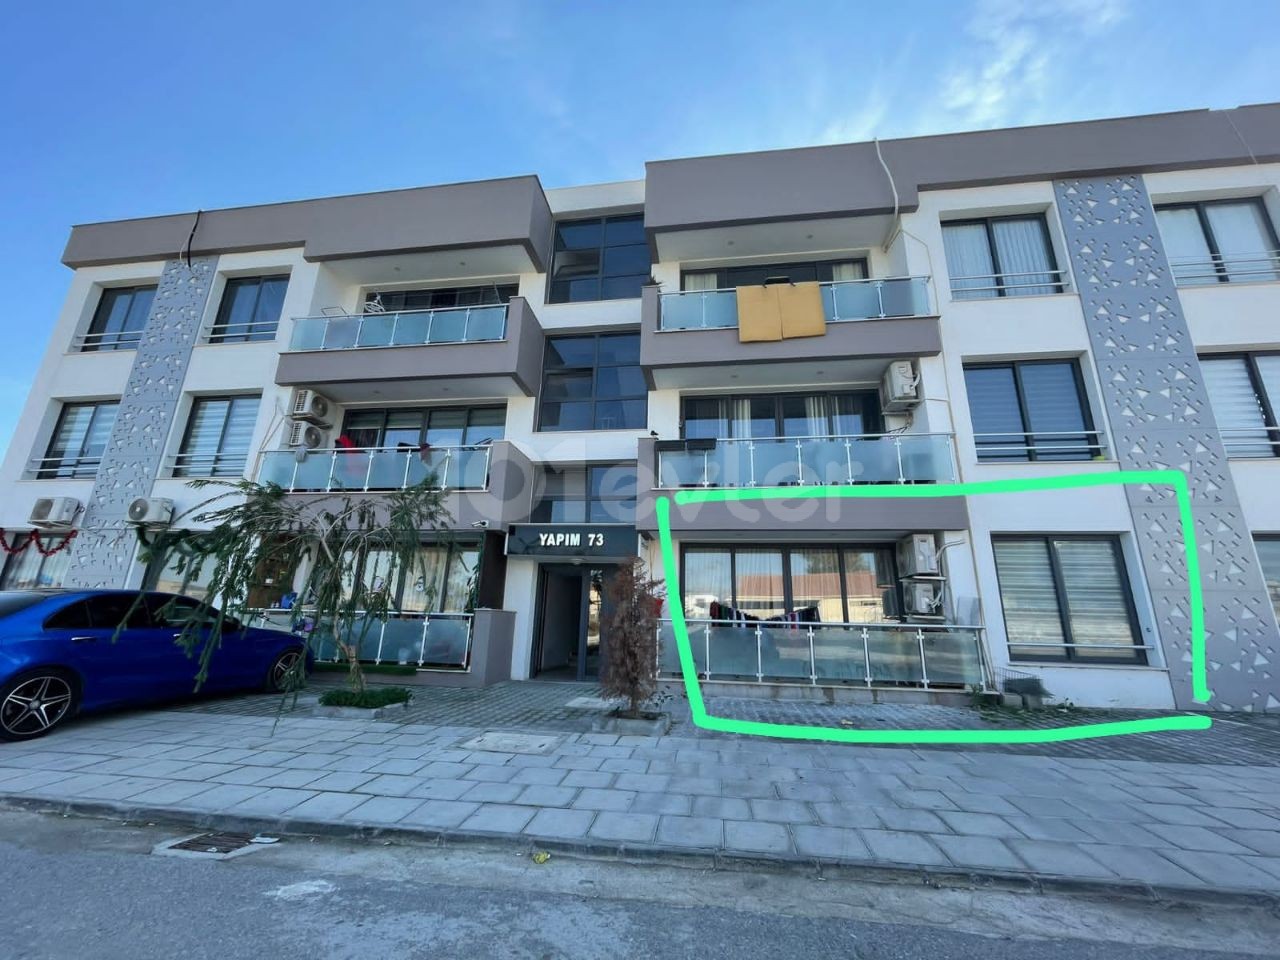 آپارتمان 3 + 1 طبقه همکف ما در HAMİTKÖY منتظر خریدار جدید خود است.